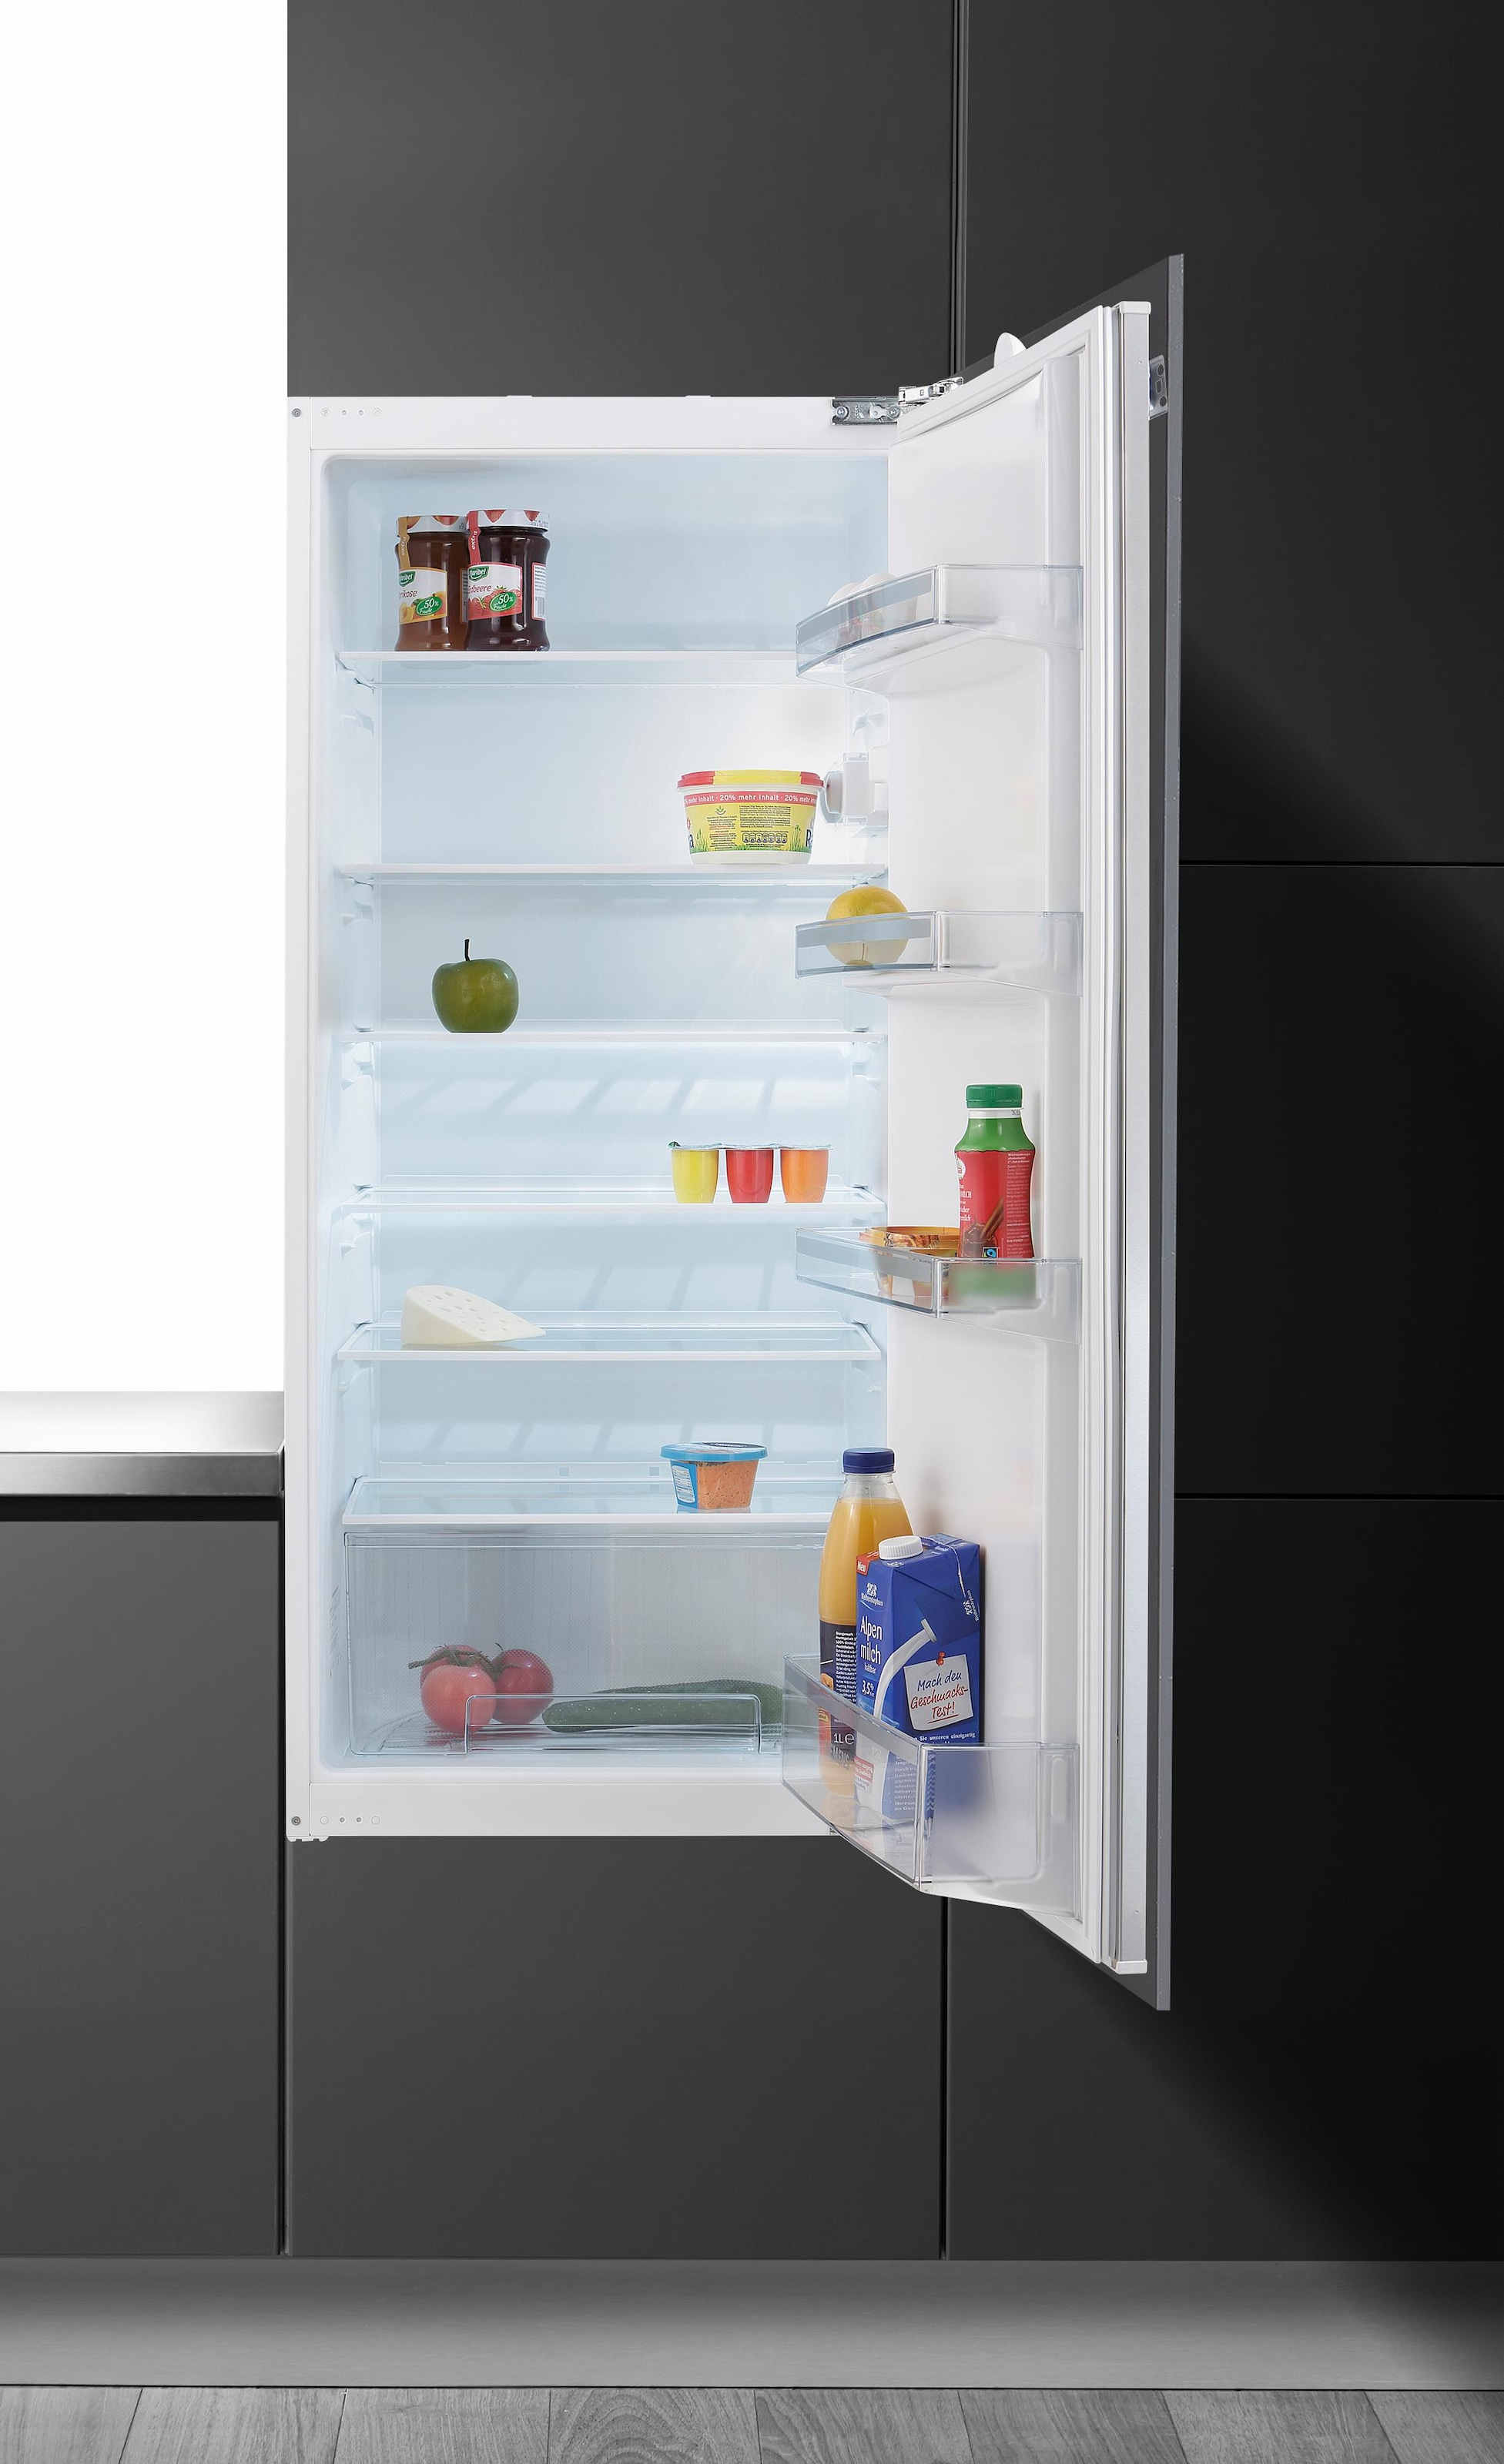 Preisvergleich für SIEMENS Einbaukühlschrank iQ100, GTIN: 4242003545416 cm hoch, 122,1 54,1 | cm breit, Ladendirekt